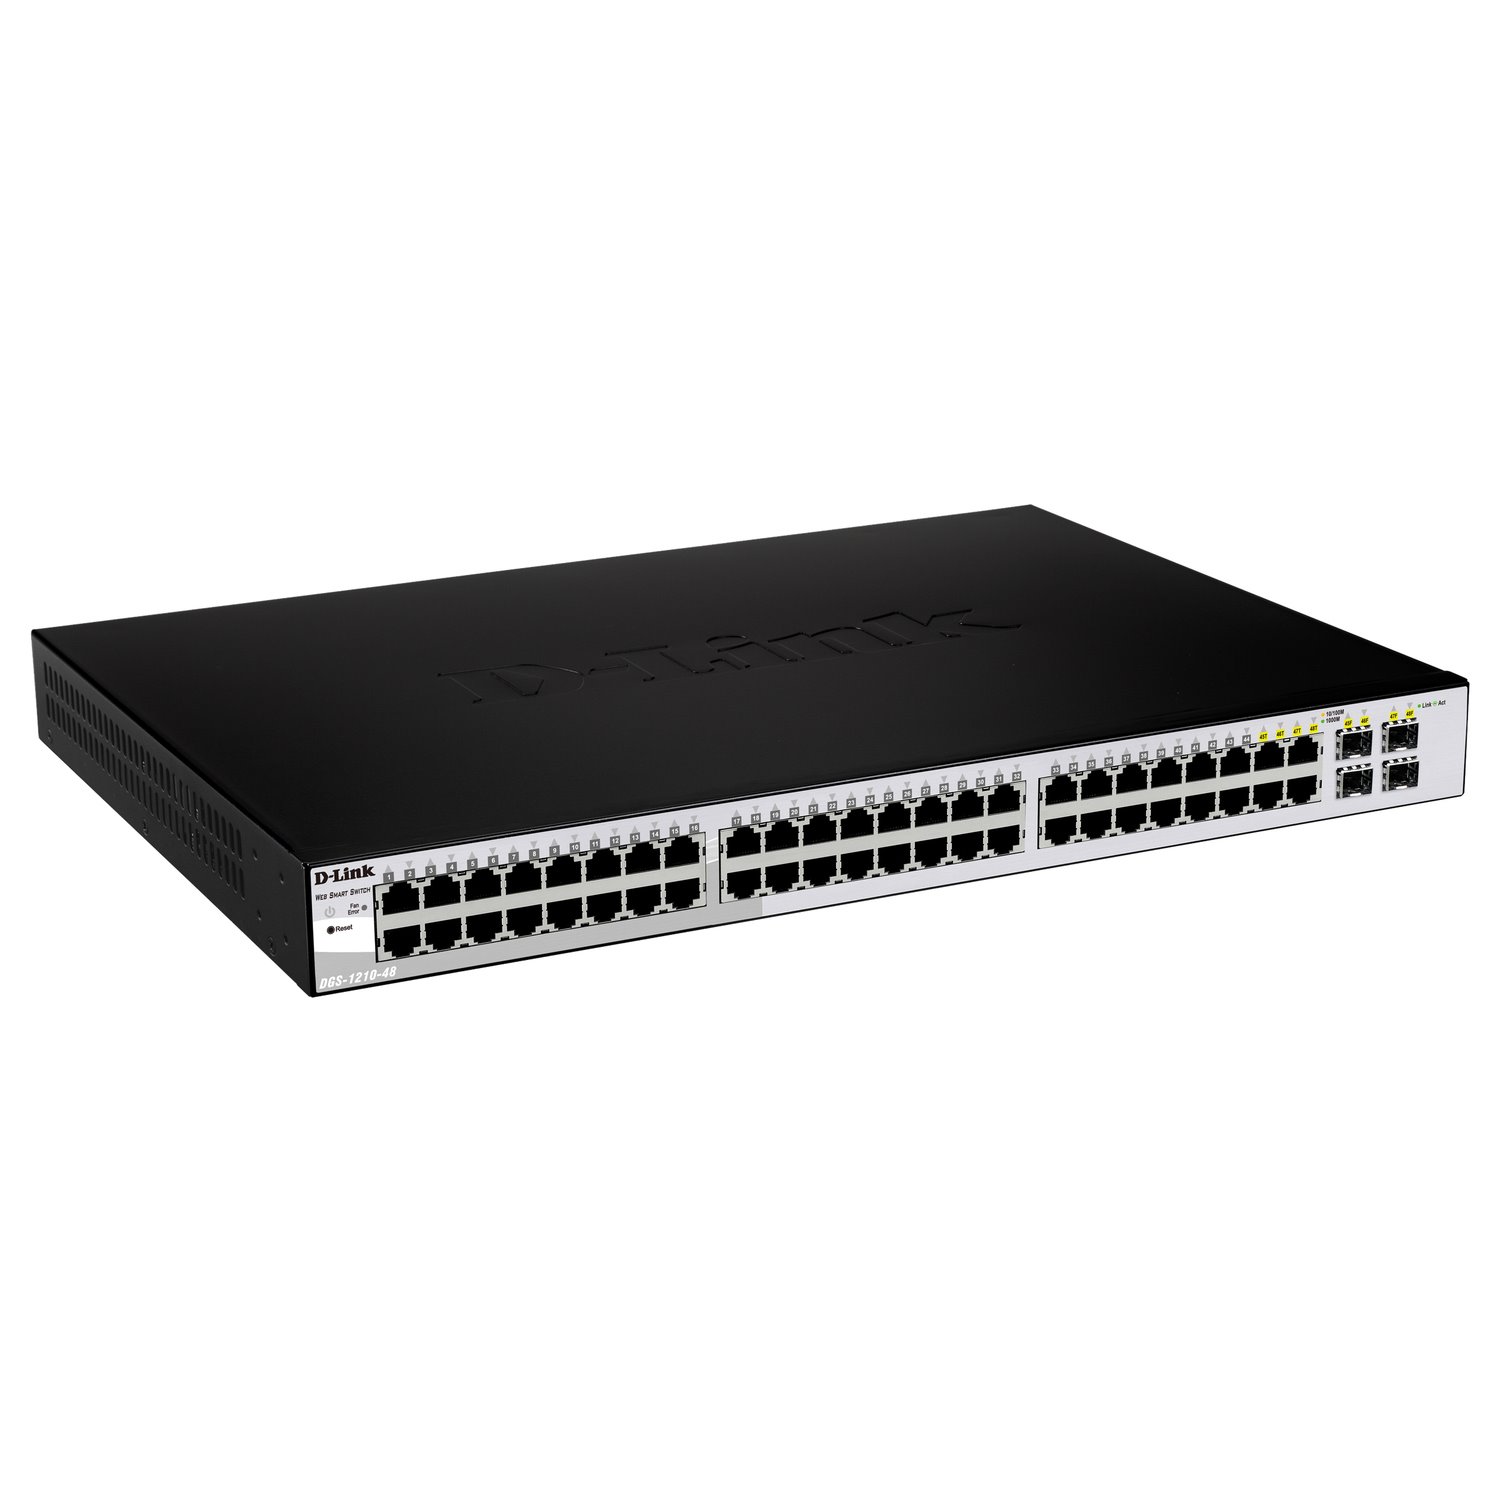 D-Link DGS-1210 DGS-1210-52 48 Ports Manageable Ethernet Switch - Gigabit Ethernet - 10/100/1000Base-T